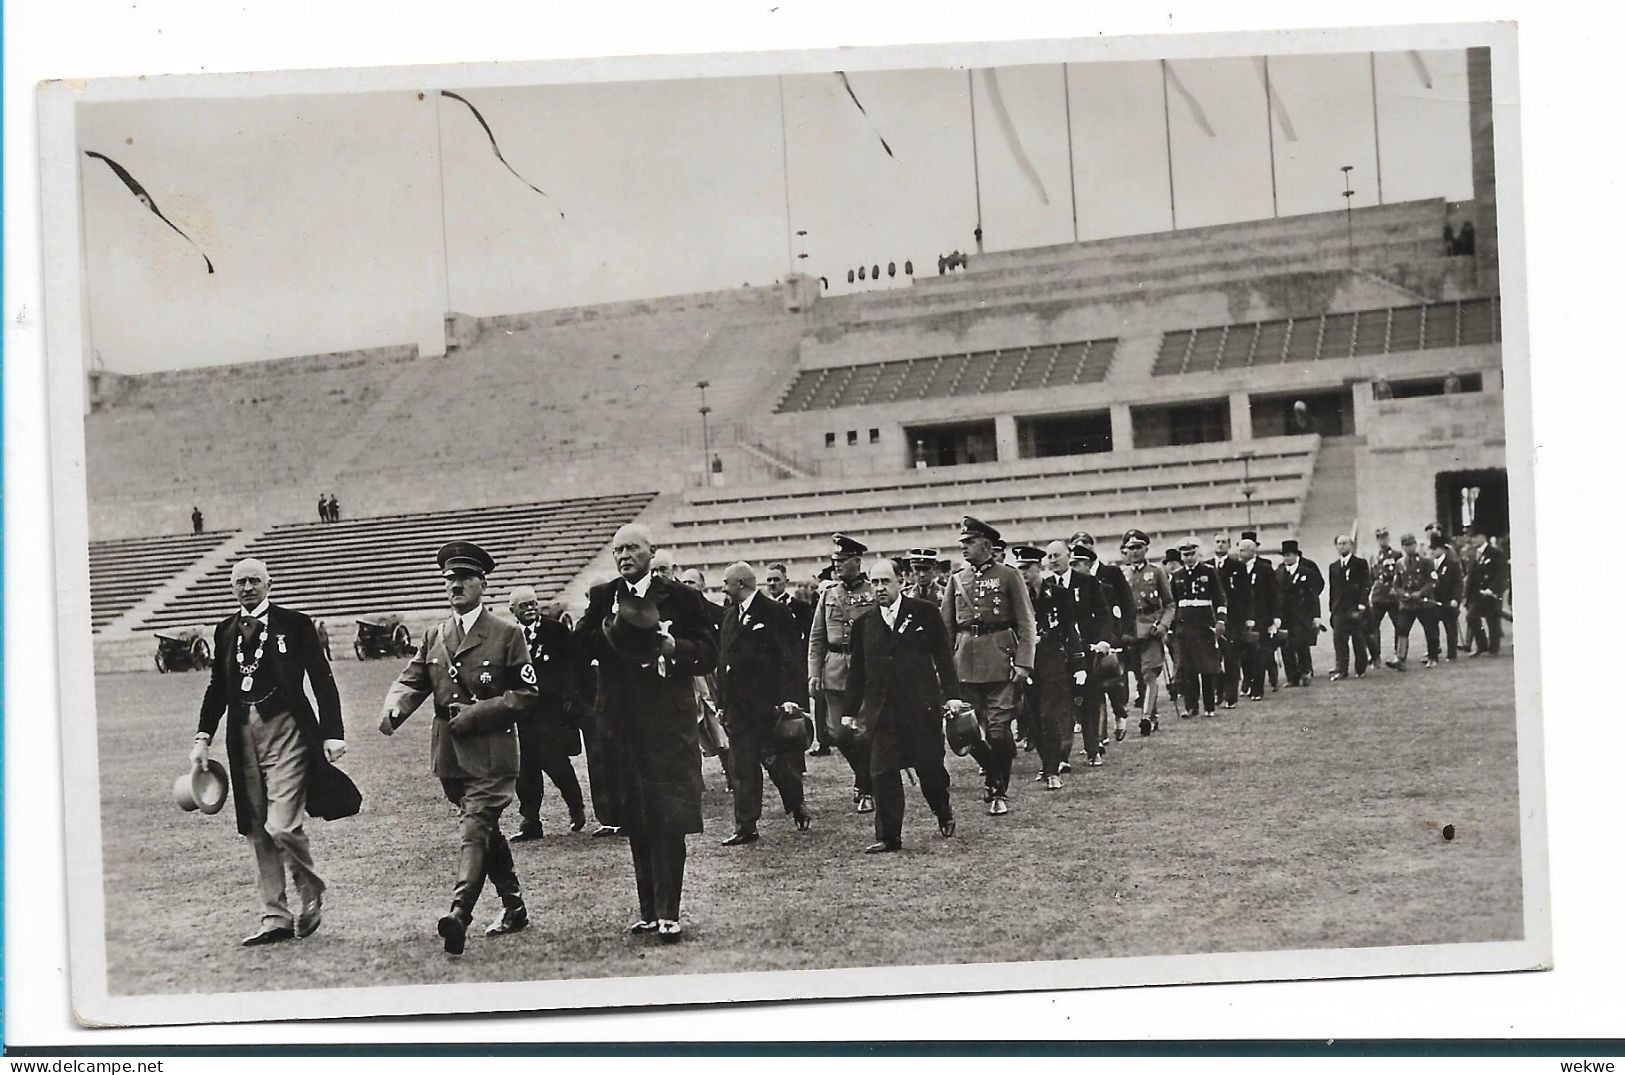 OY205 / OLYMPIADE 1936 - Amtliche Postkarte Zur Eröffnung Der Olympischen Spiele, 6.8.36 - Ete 1936: Berlin